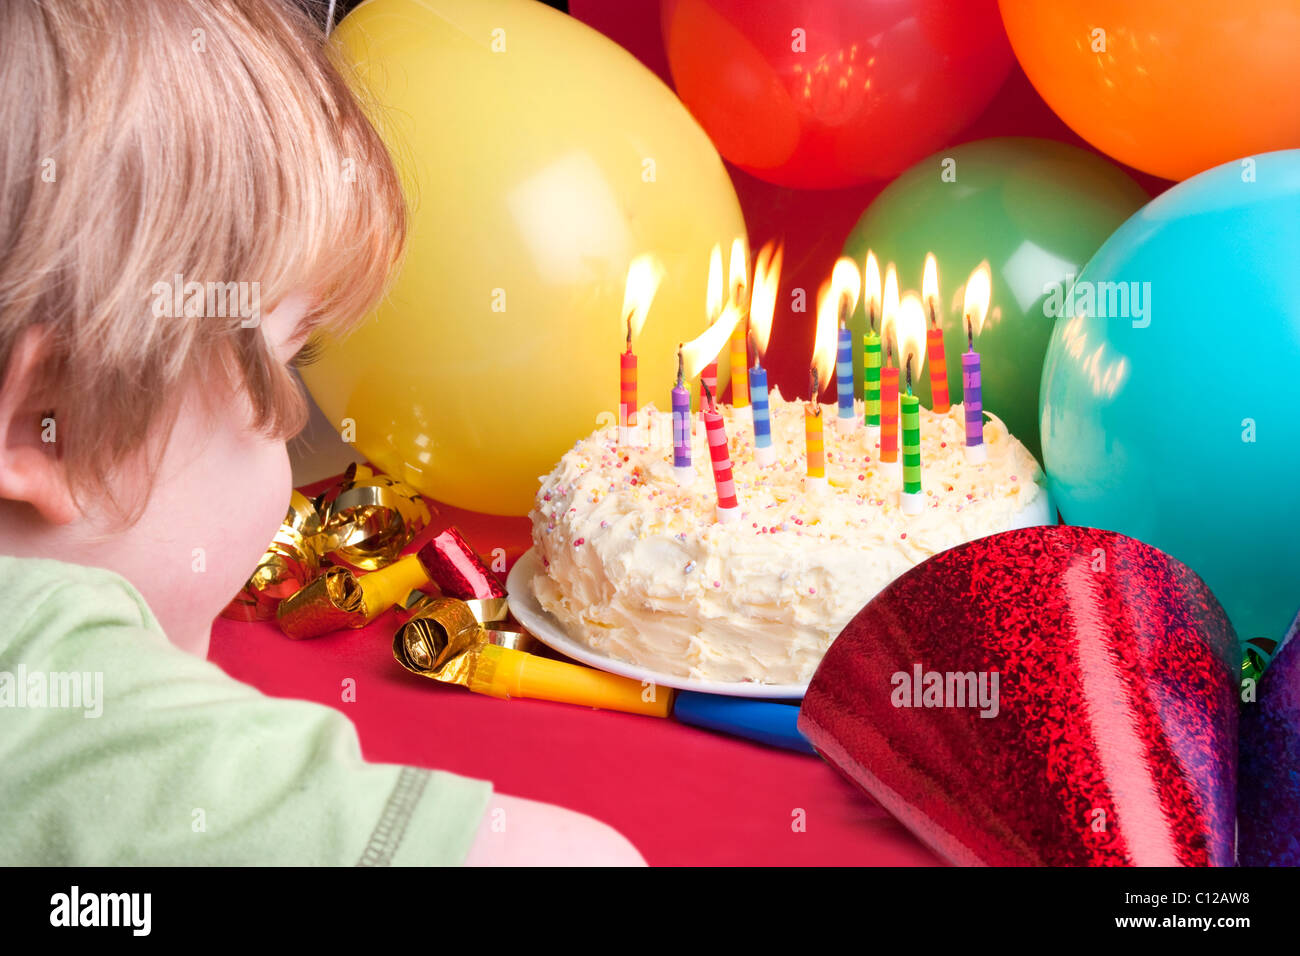 Anniversaire de la vie toujours du gâteau et des bougies et de l'enfant soufflant shot de derrière Banque D'Images